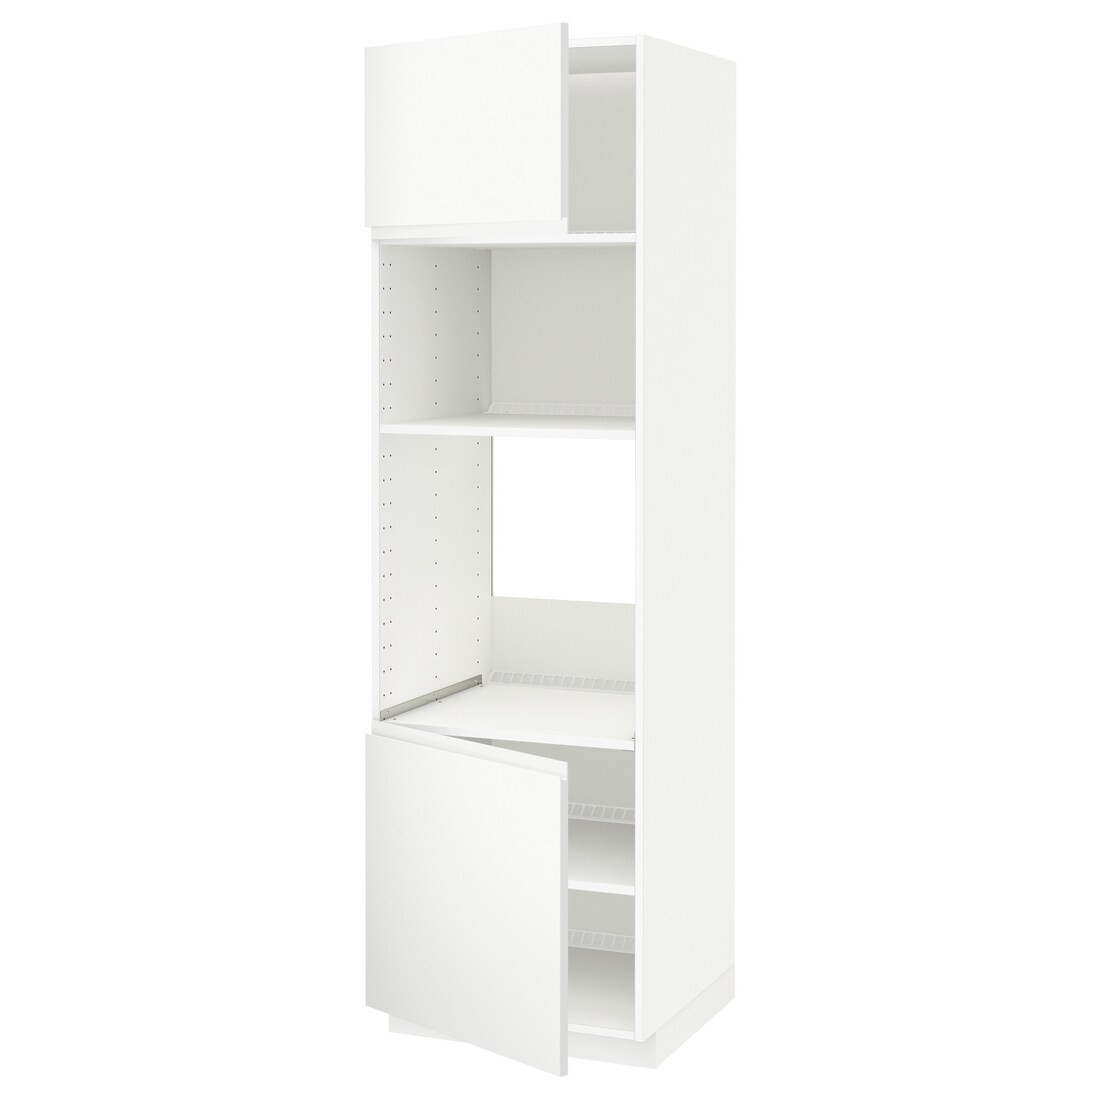 IKEA METOD МЕТОД Высокий шкаф для духовки / СВЧ, белый / Voxtorp матовый белый, 60x60x200 см 89460654 894.606.54